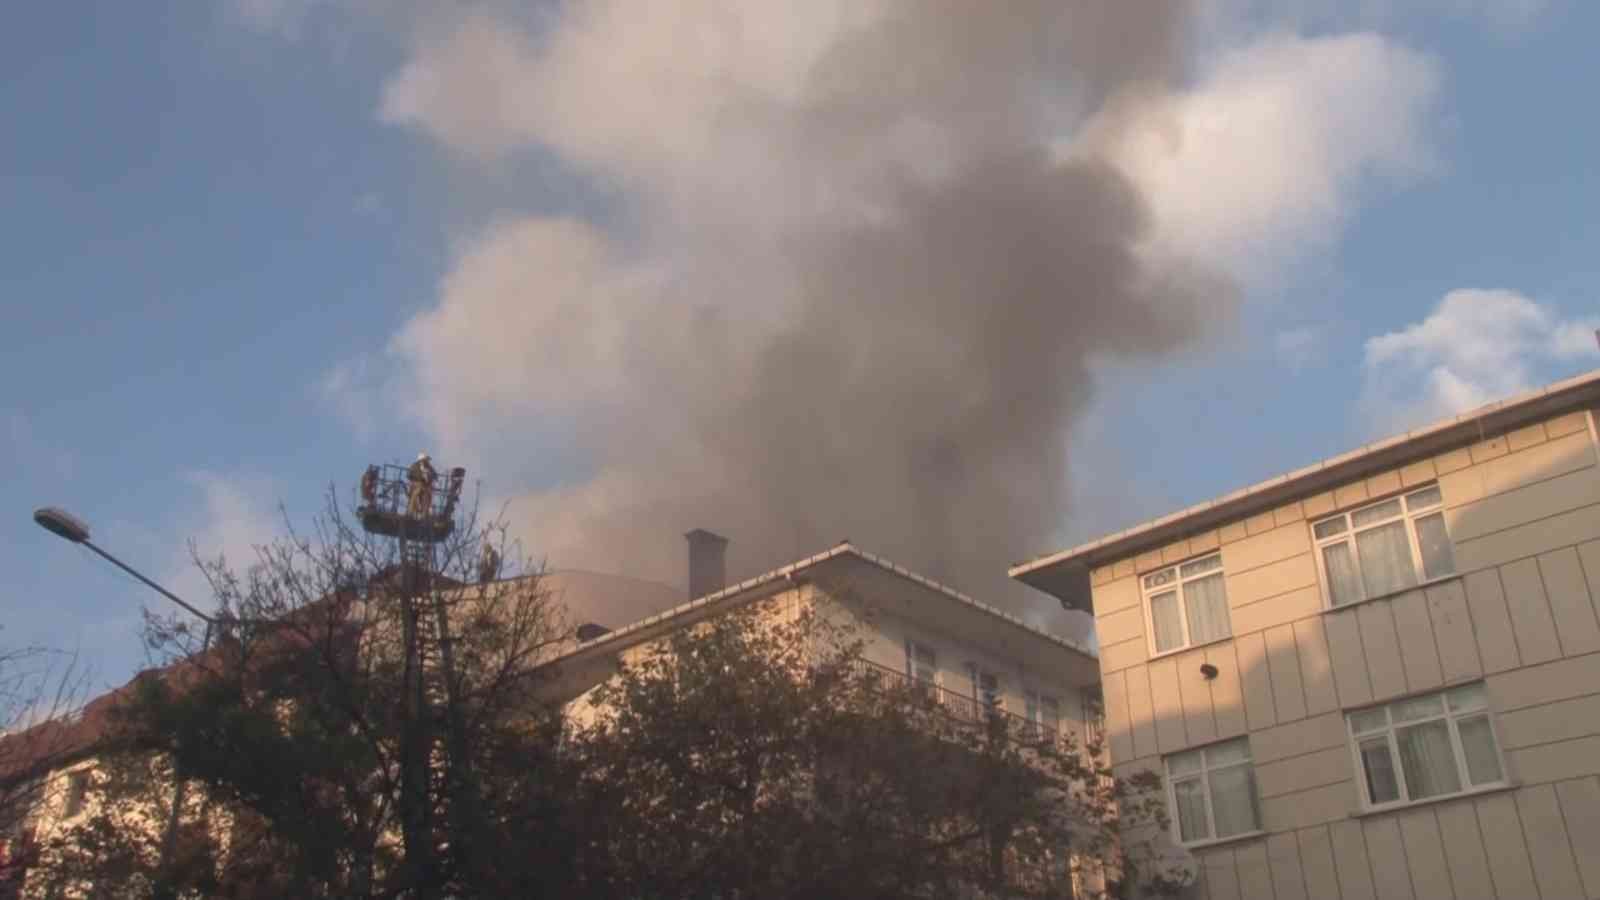 Ümraniye’de 3 katlı binanın çatısında yangın #istanbul